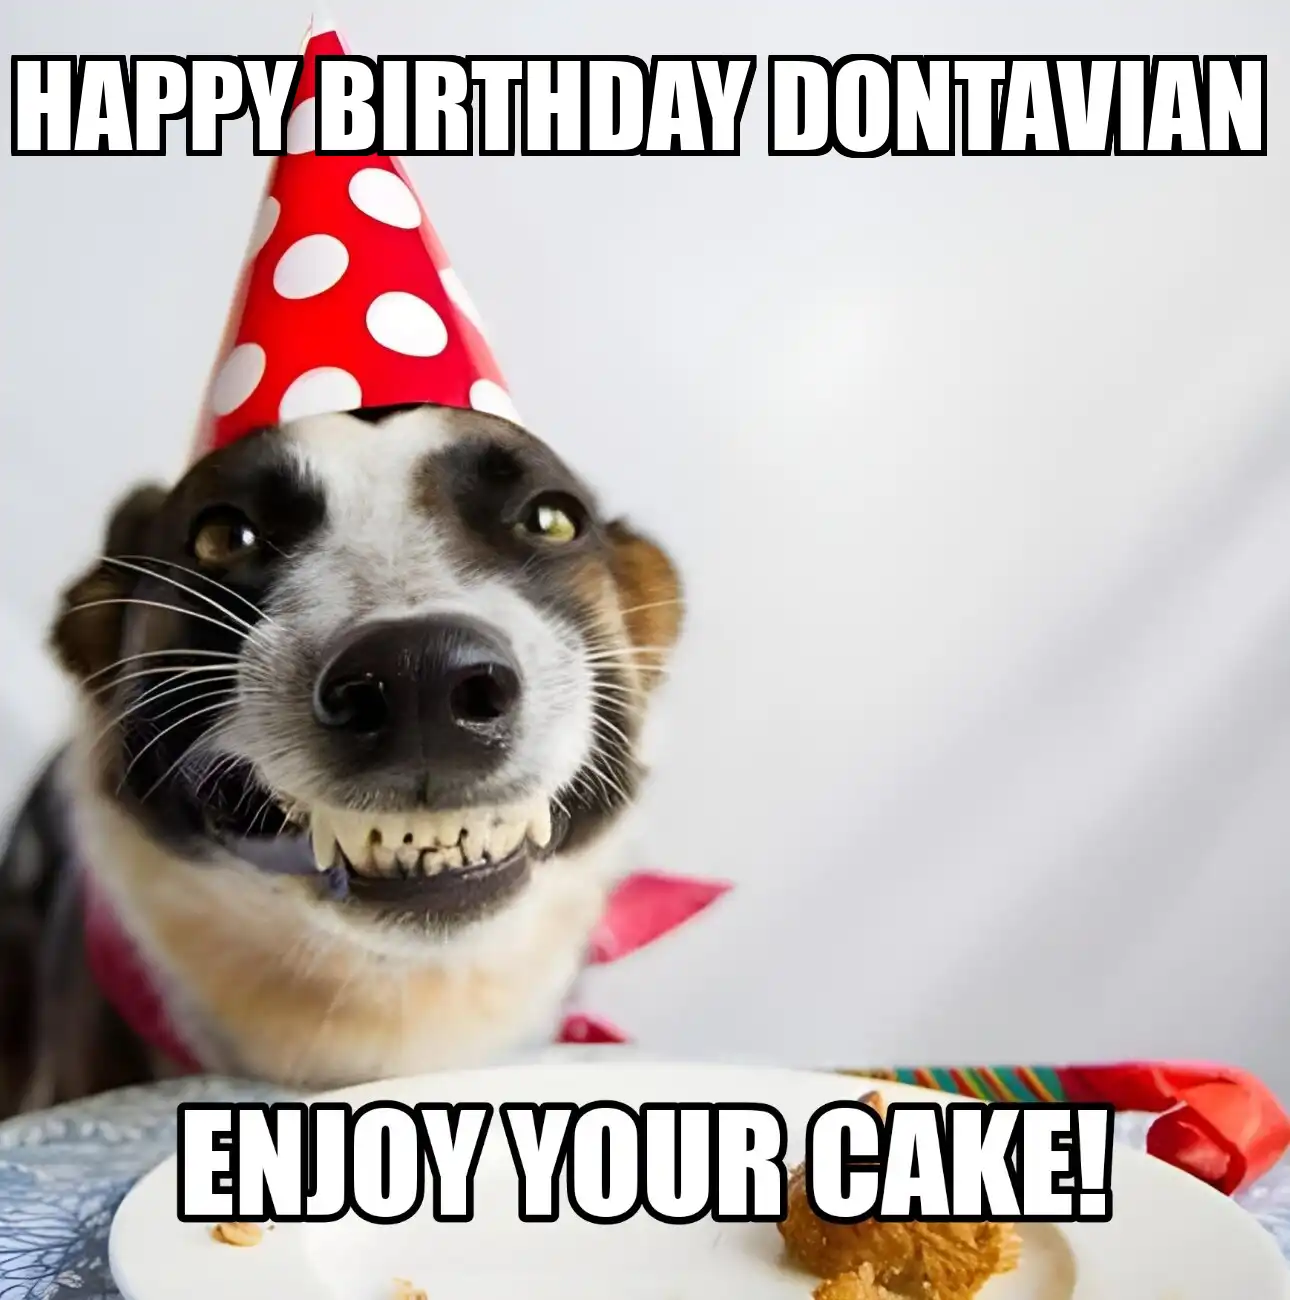 Happy Birthday Dontavian Enjoy Your Cake Dog Meme